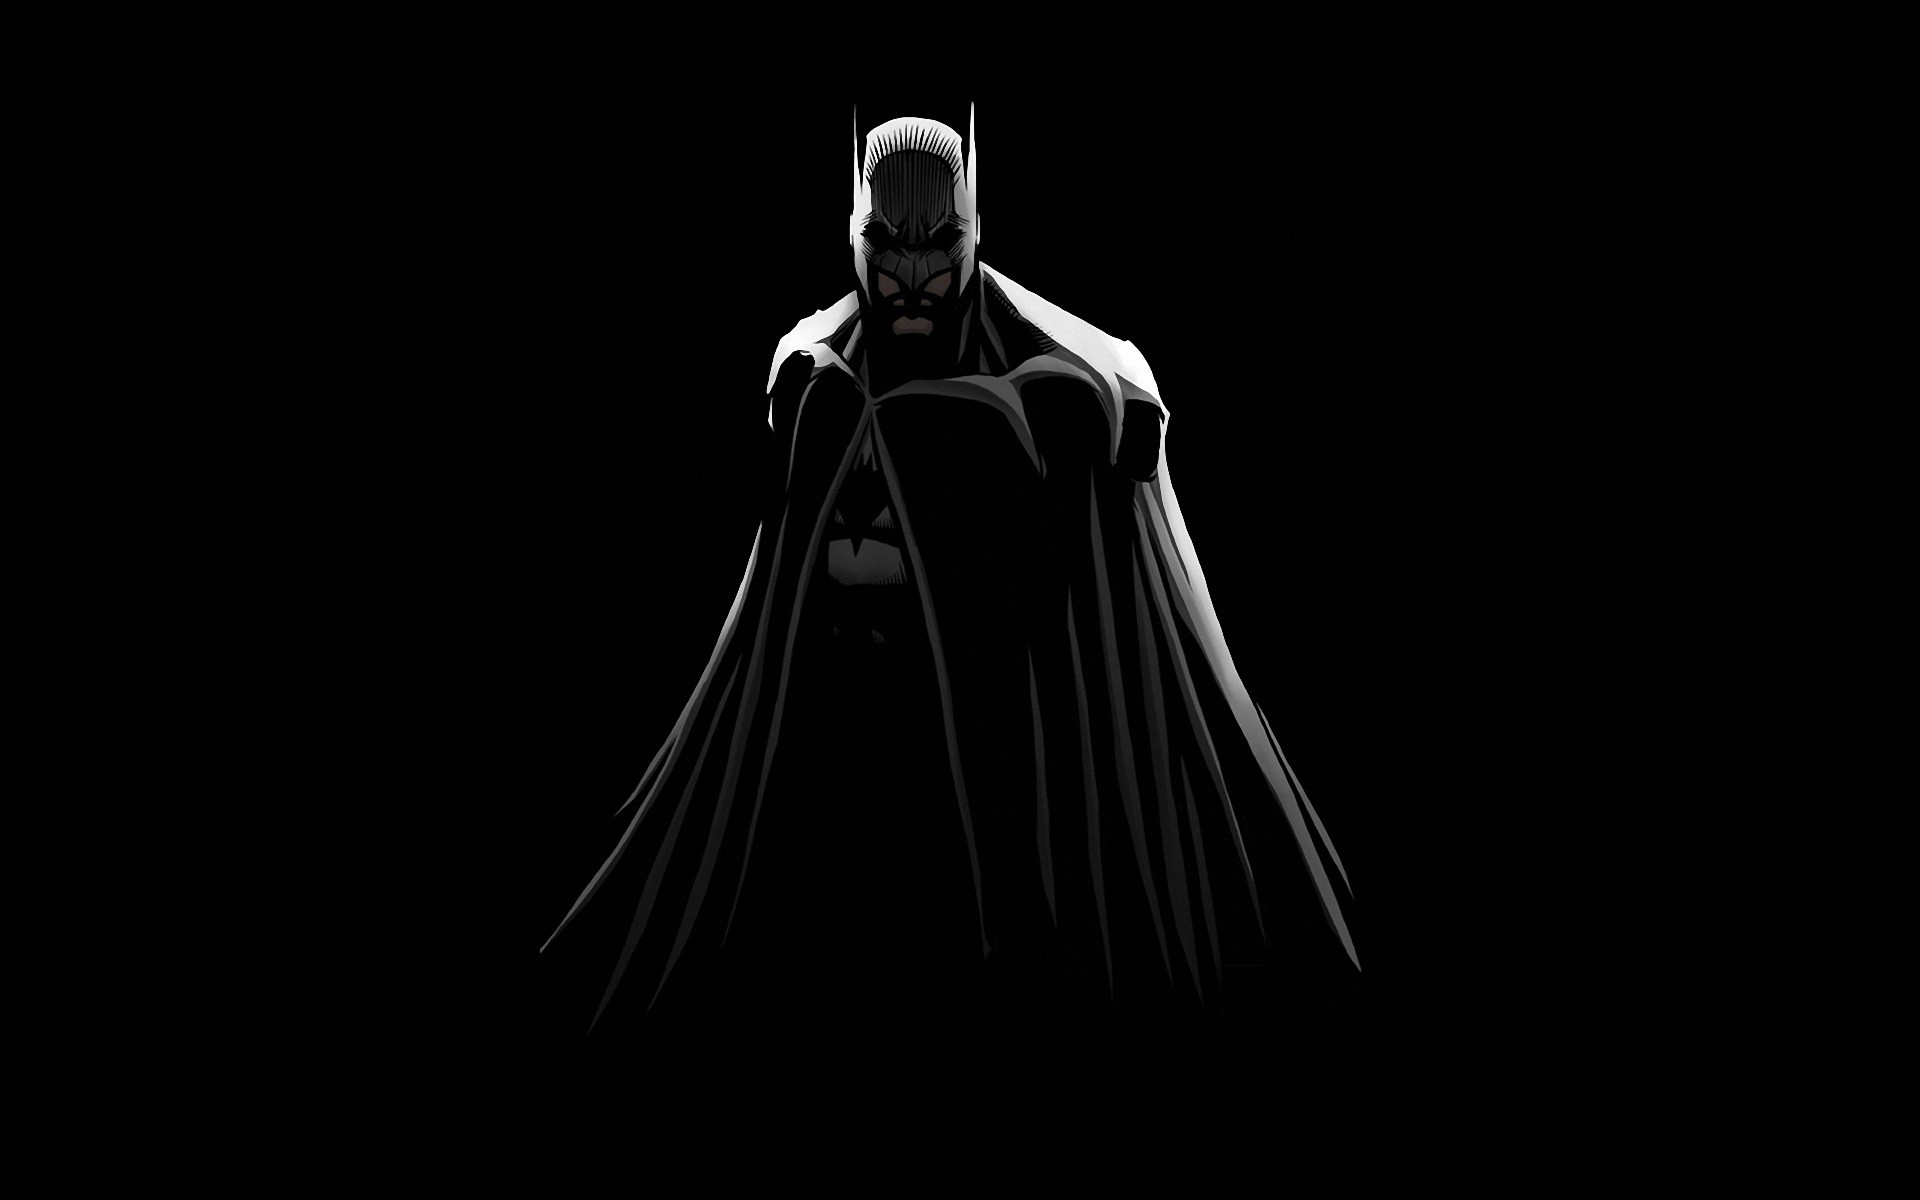 35 Gambar Batman Black and White Hd Wallpaper terbaru 2020